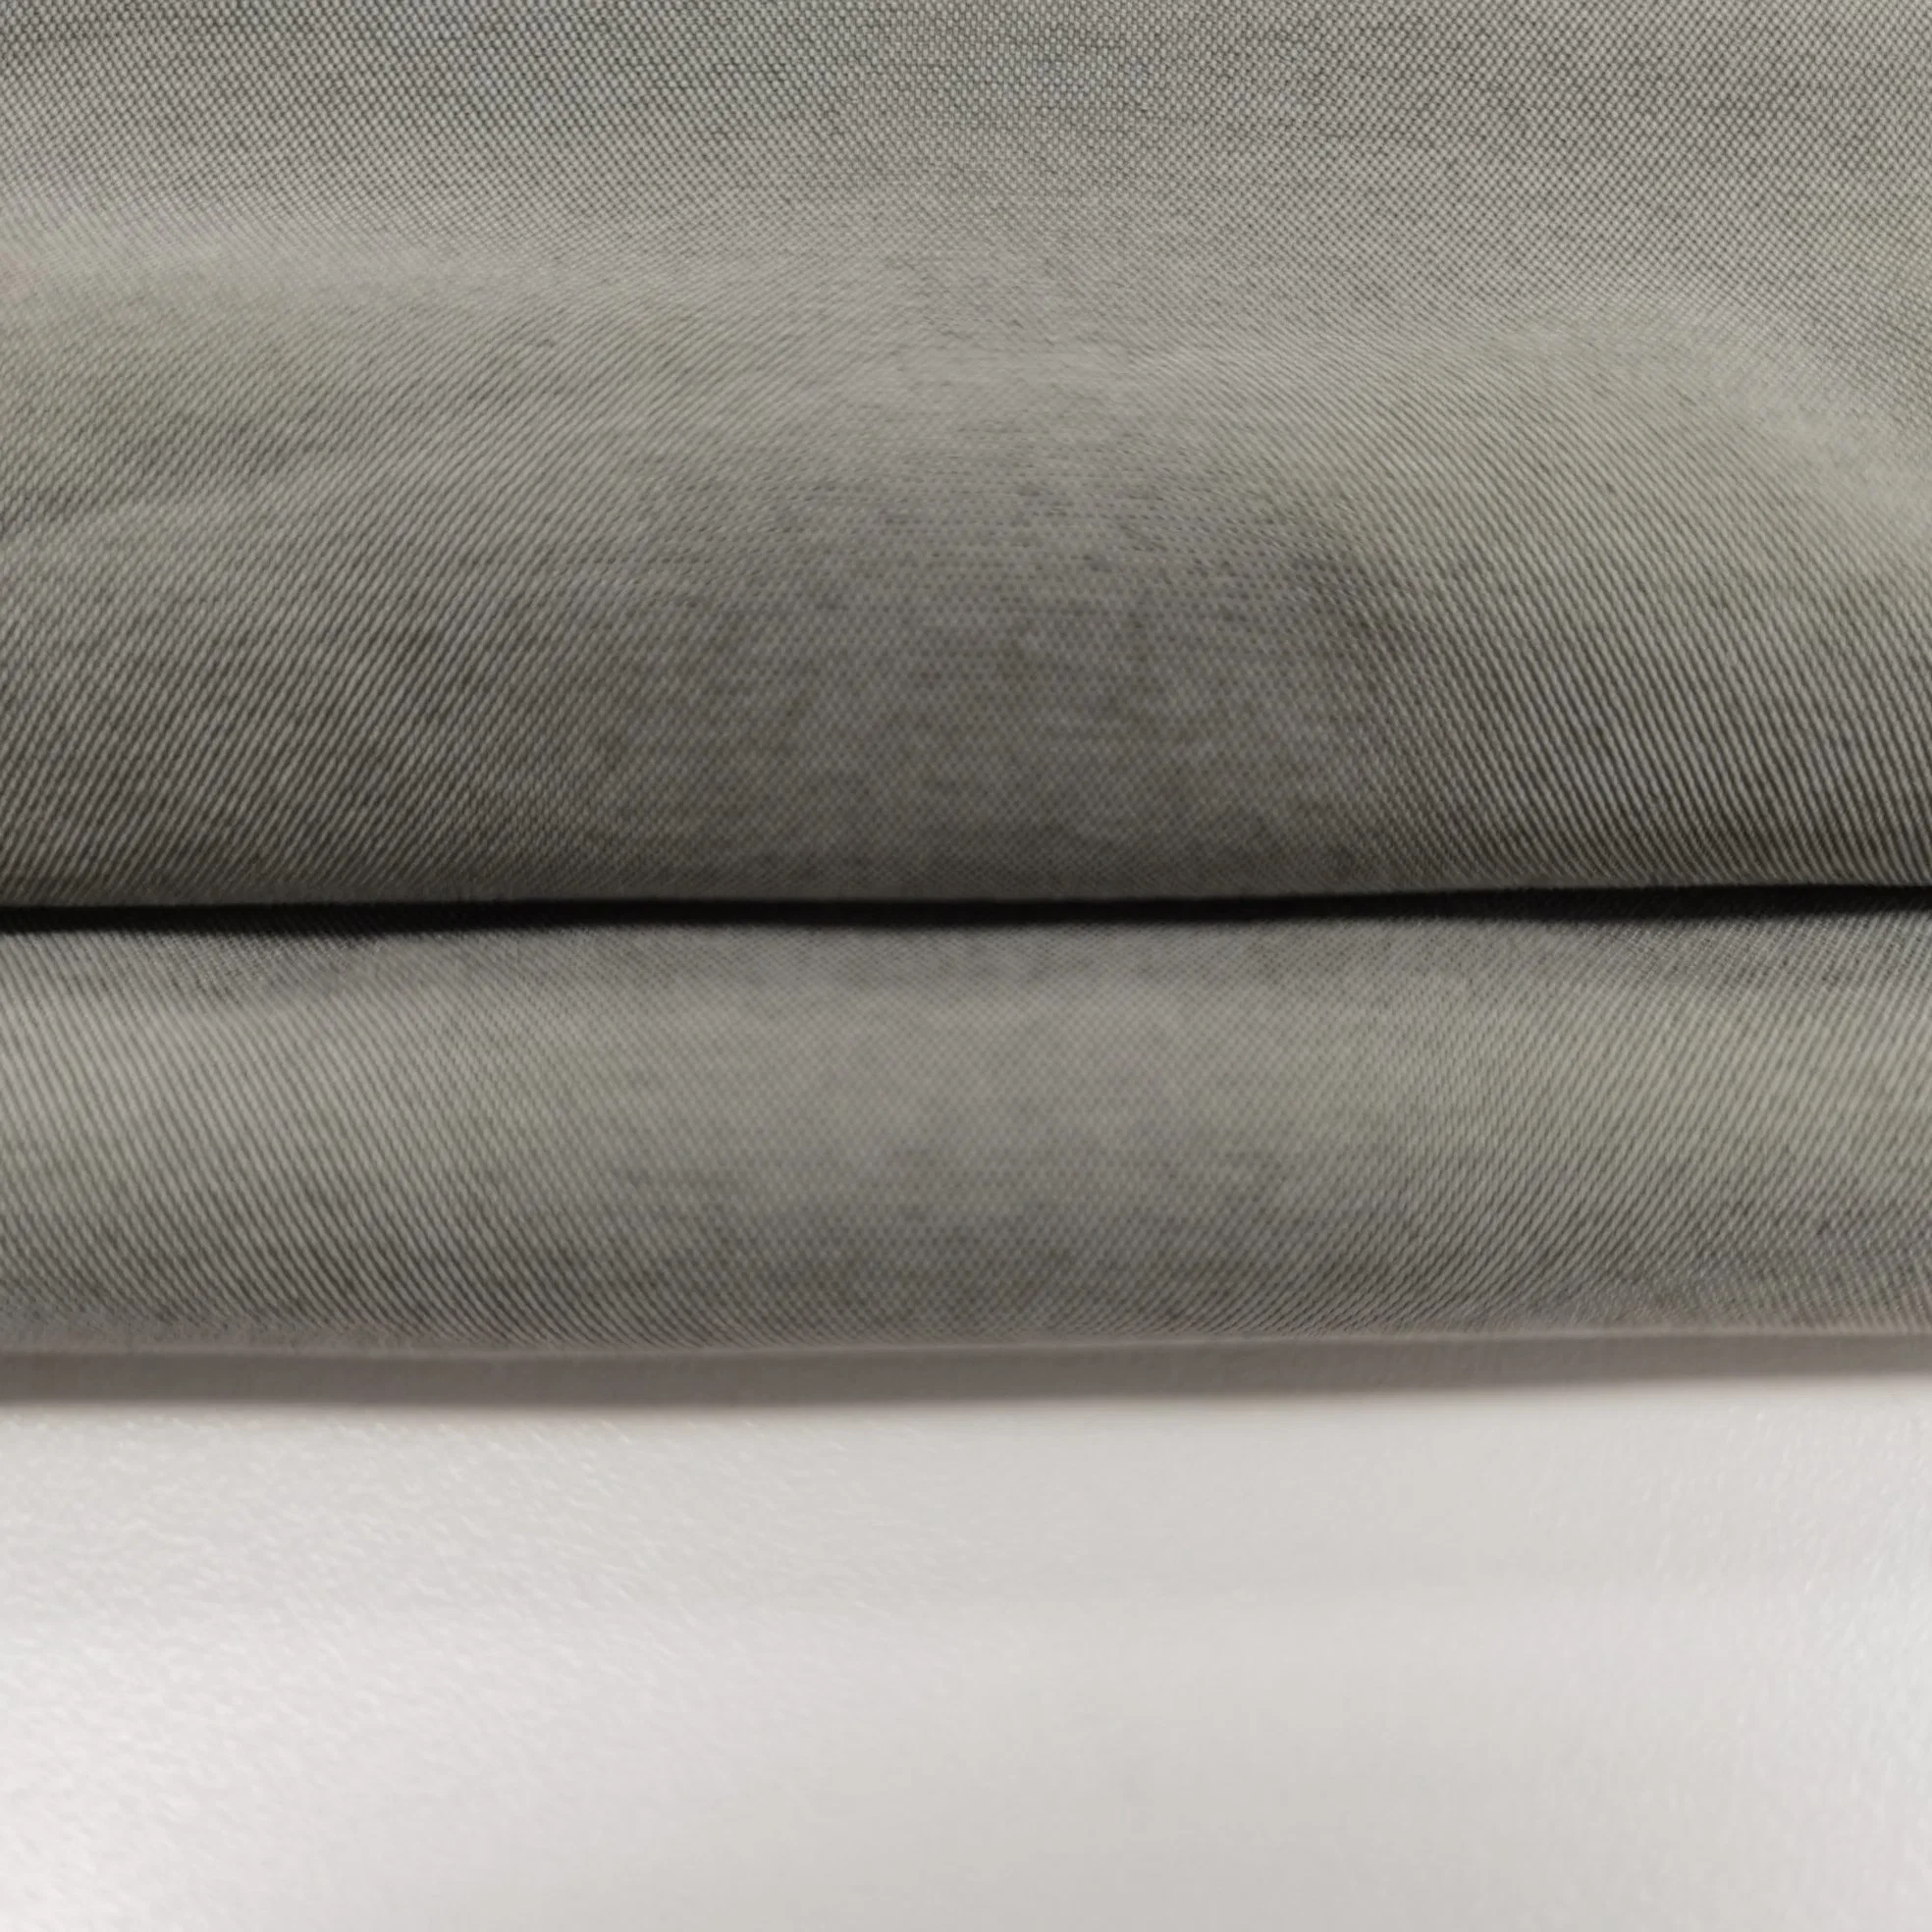 China Lieferant Nylon Polyester Kation T800 Weft elastische stumpf Poly Stoff funktionelles atmungsaktives Gewebe für Sportswear